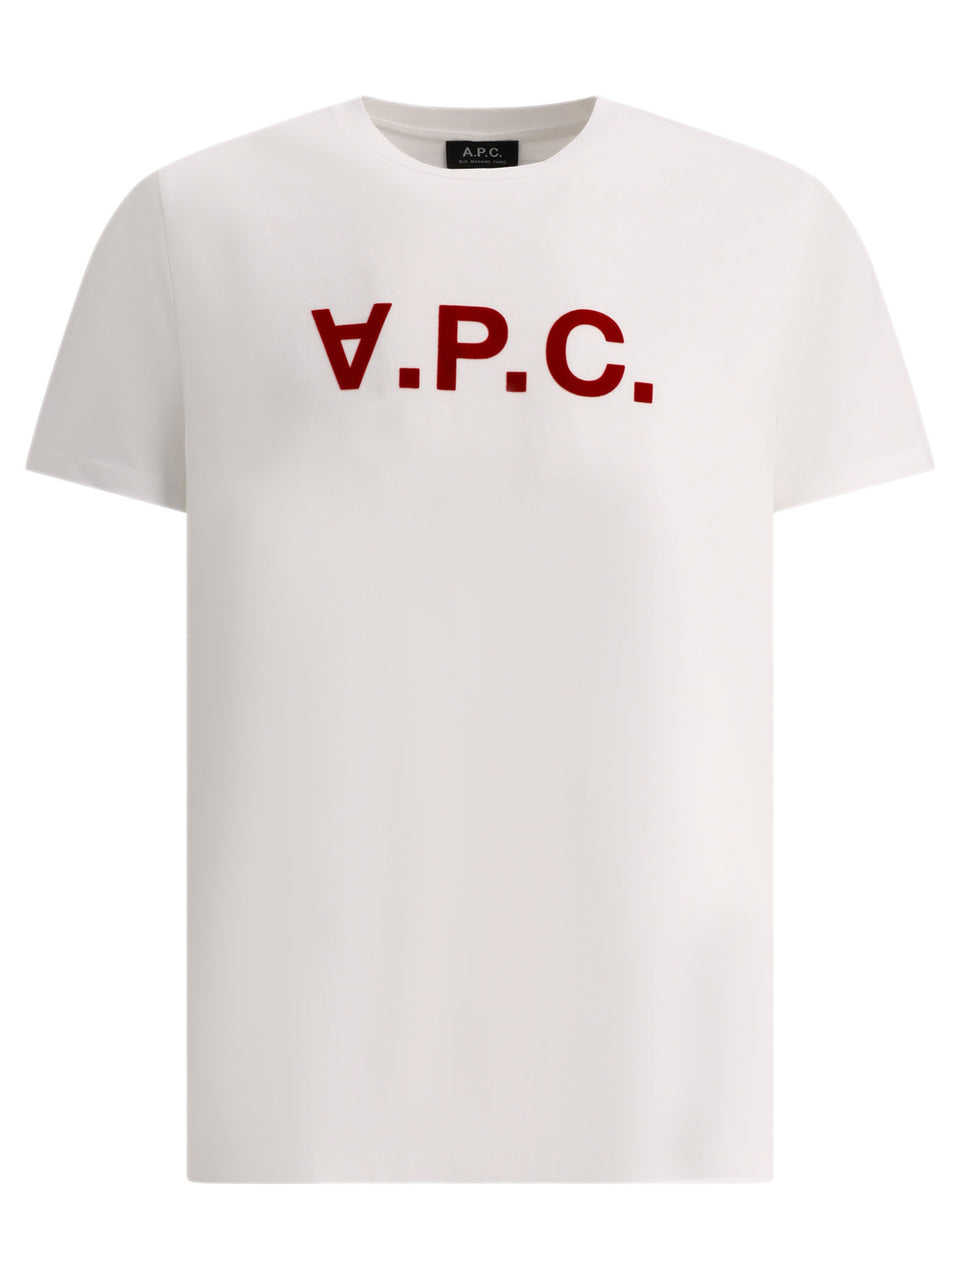 A.P.C.  メンズ Tシャツ